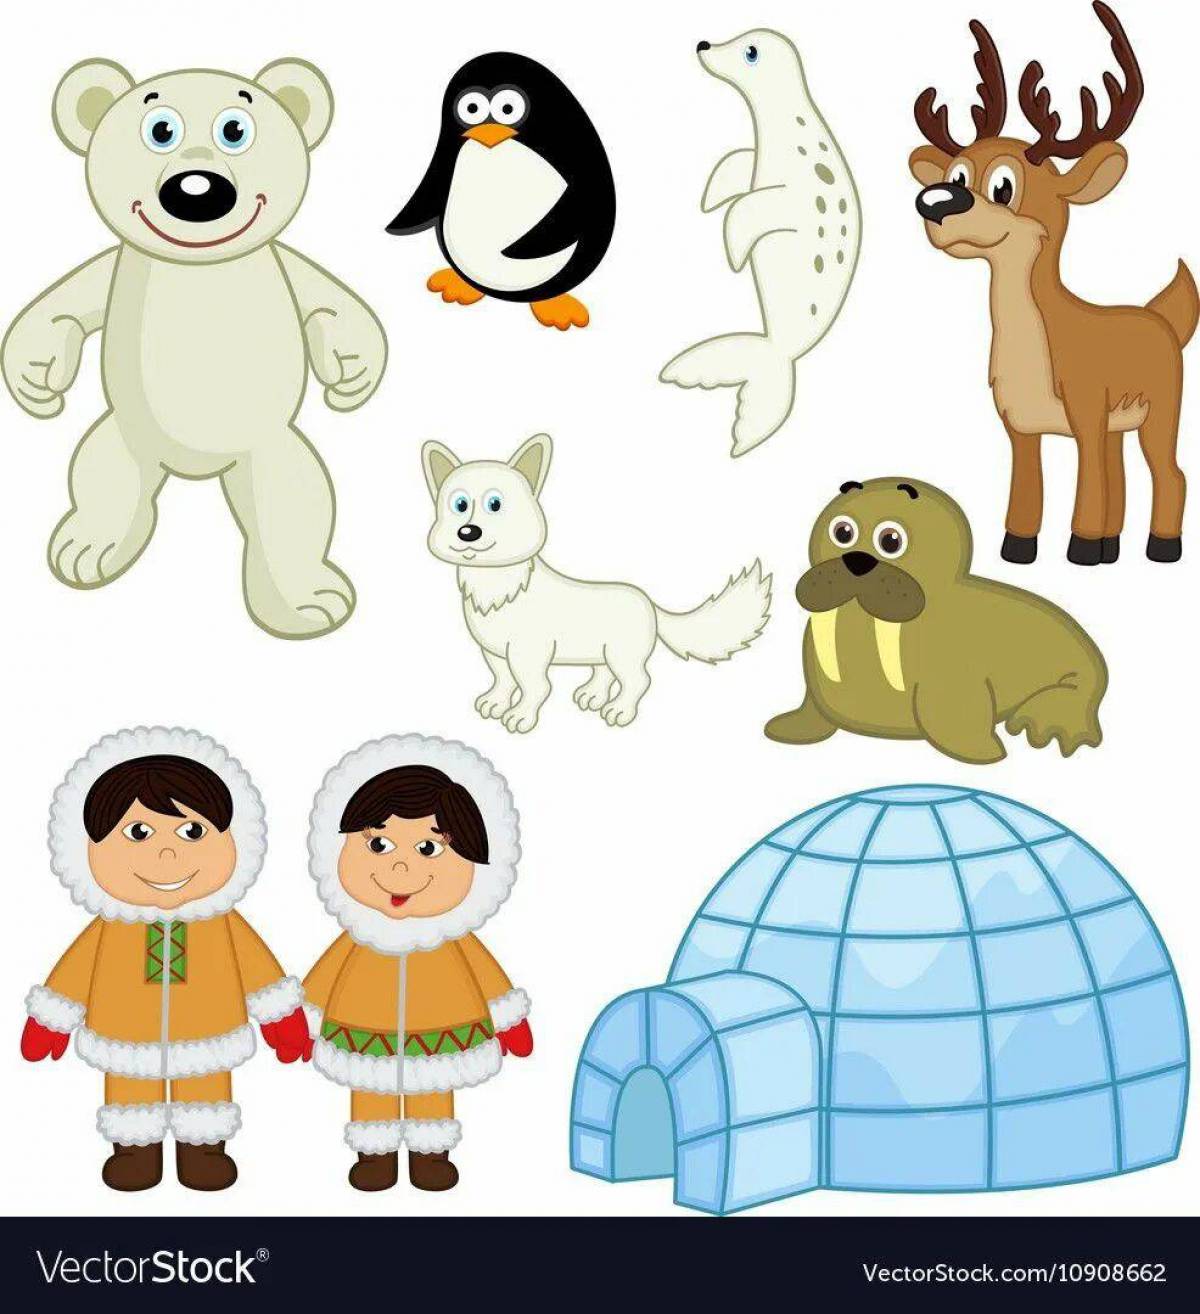 Эскимос для детей #17